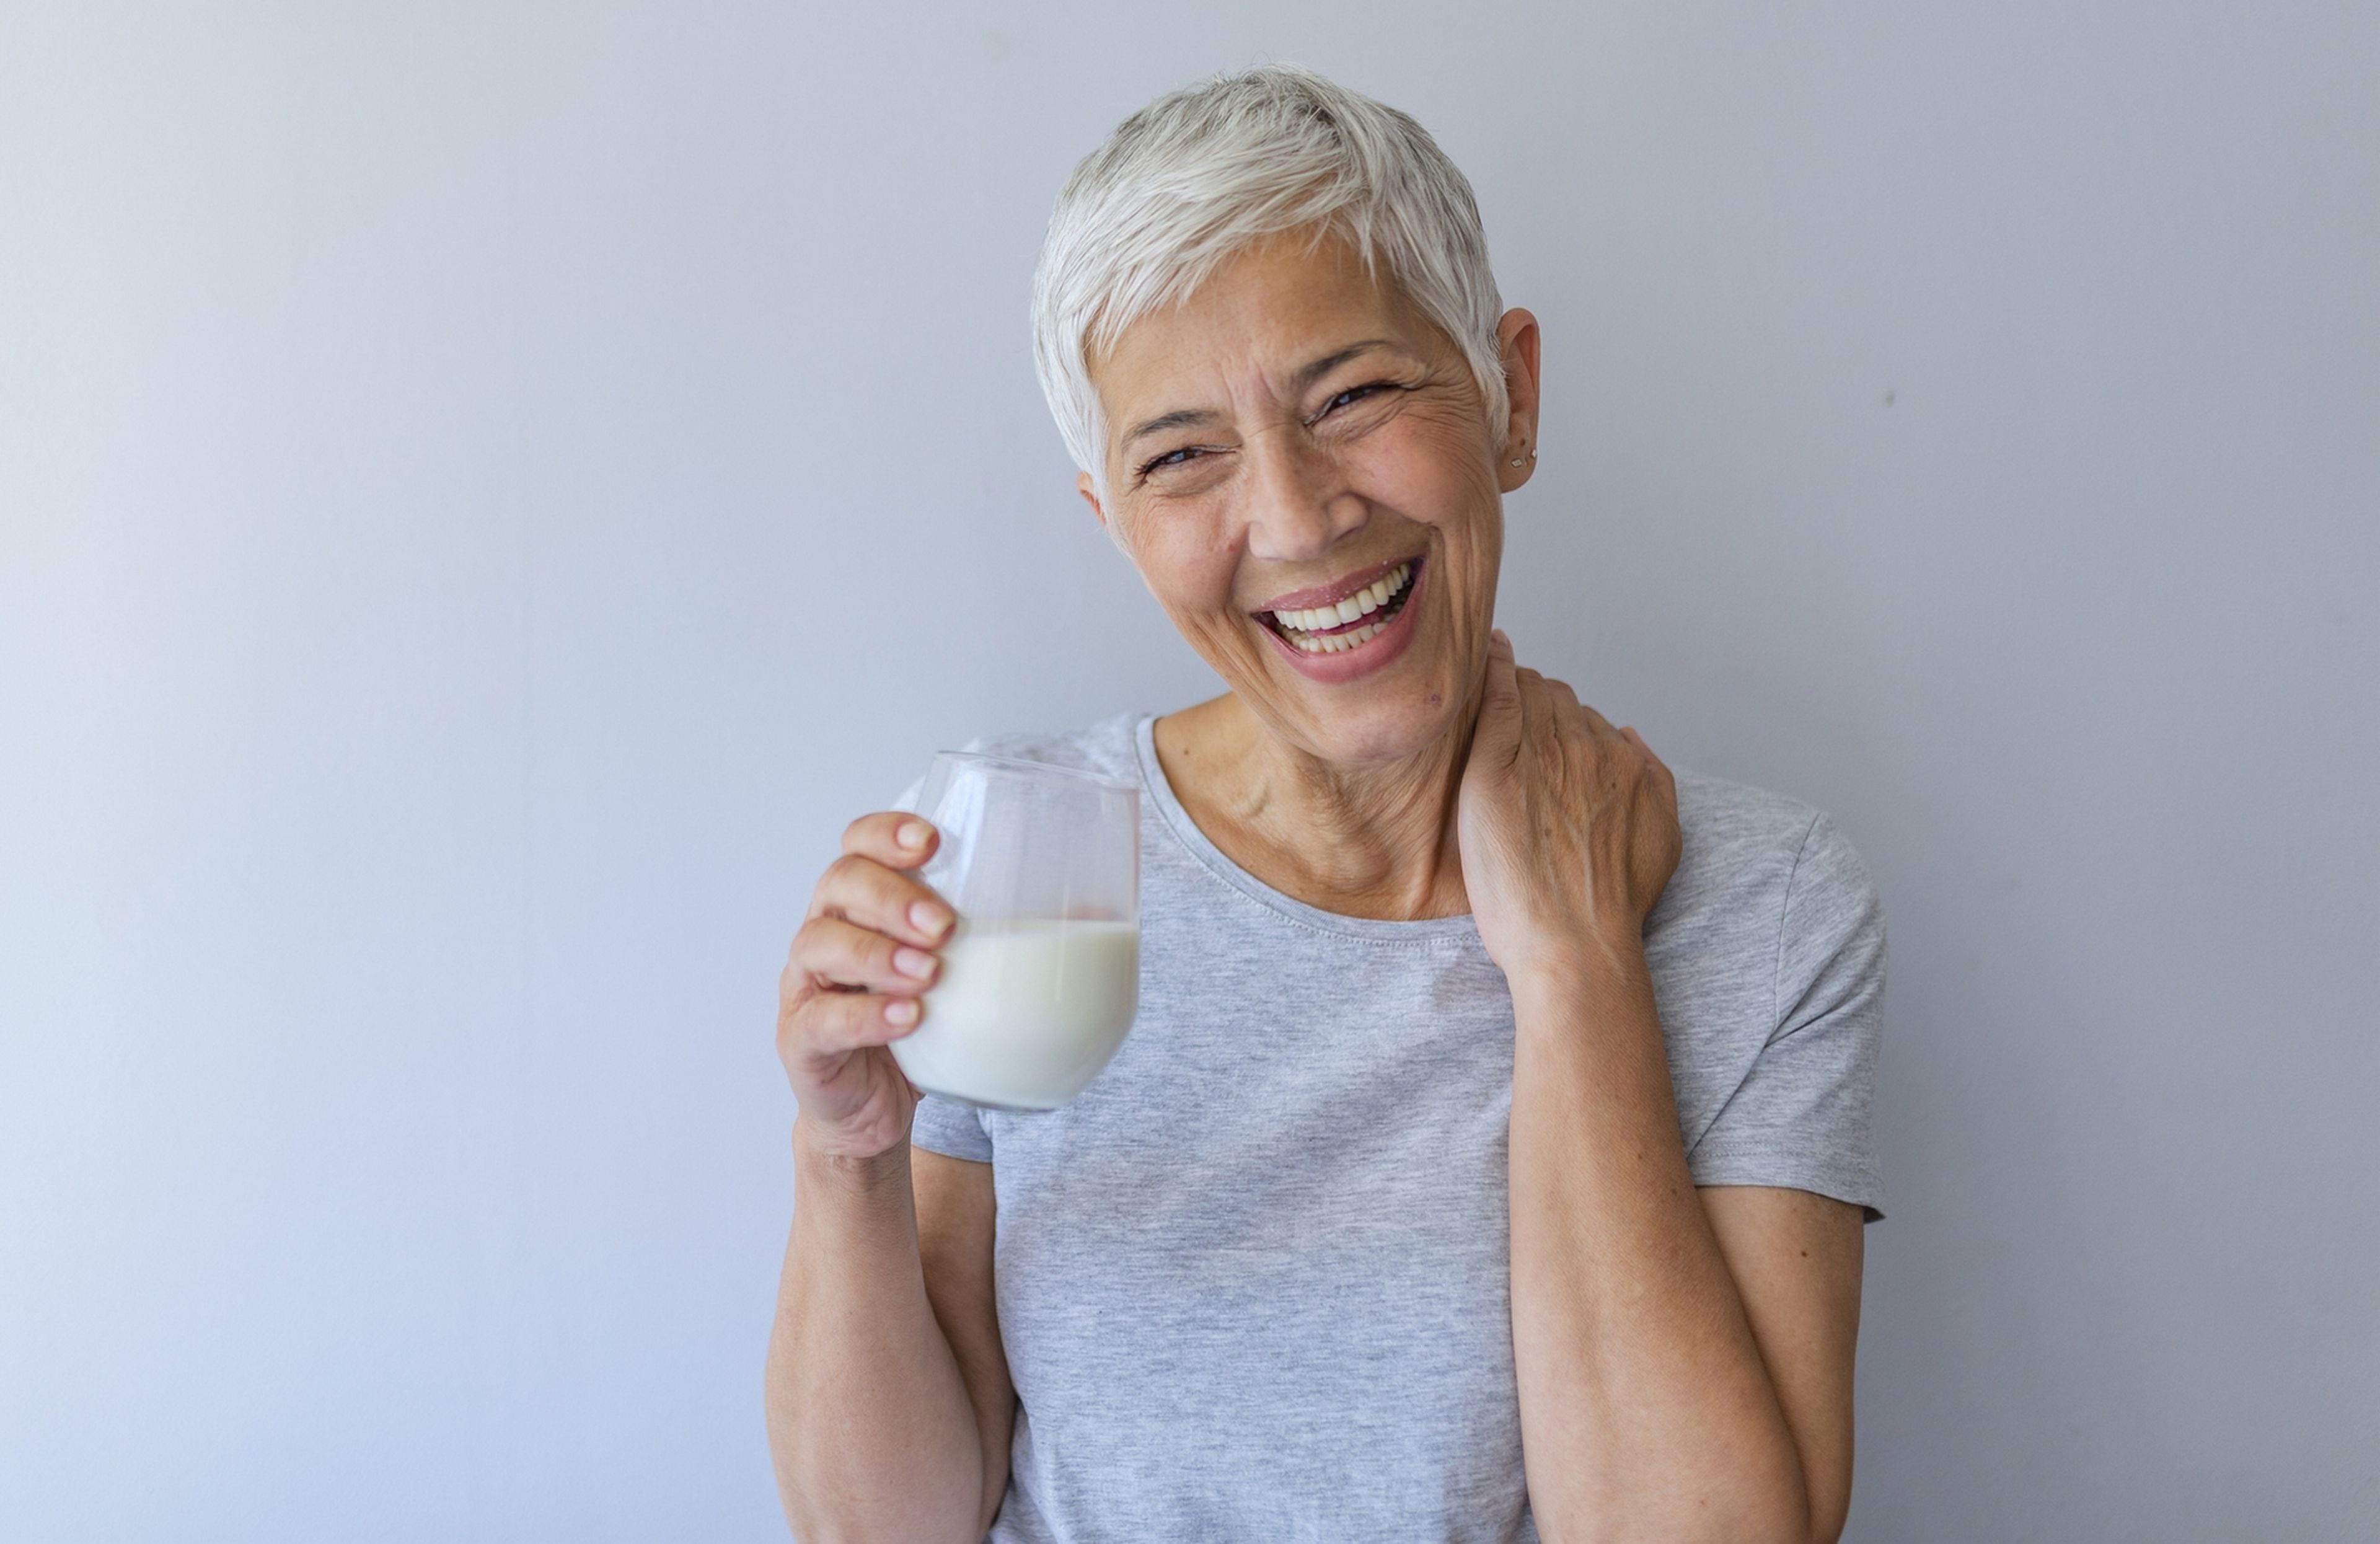 ¿Madres a los 60 años? La empresa biotech Celmatix asegura que puede retrasar la menopausia 15 años